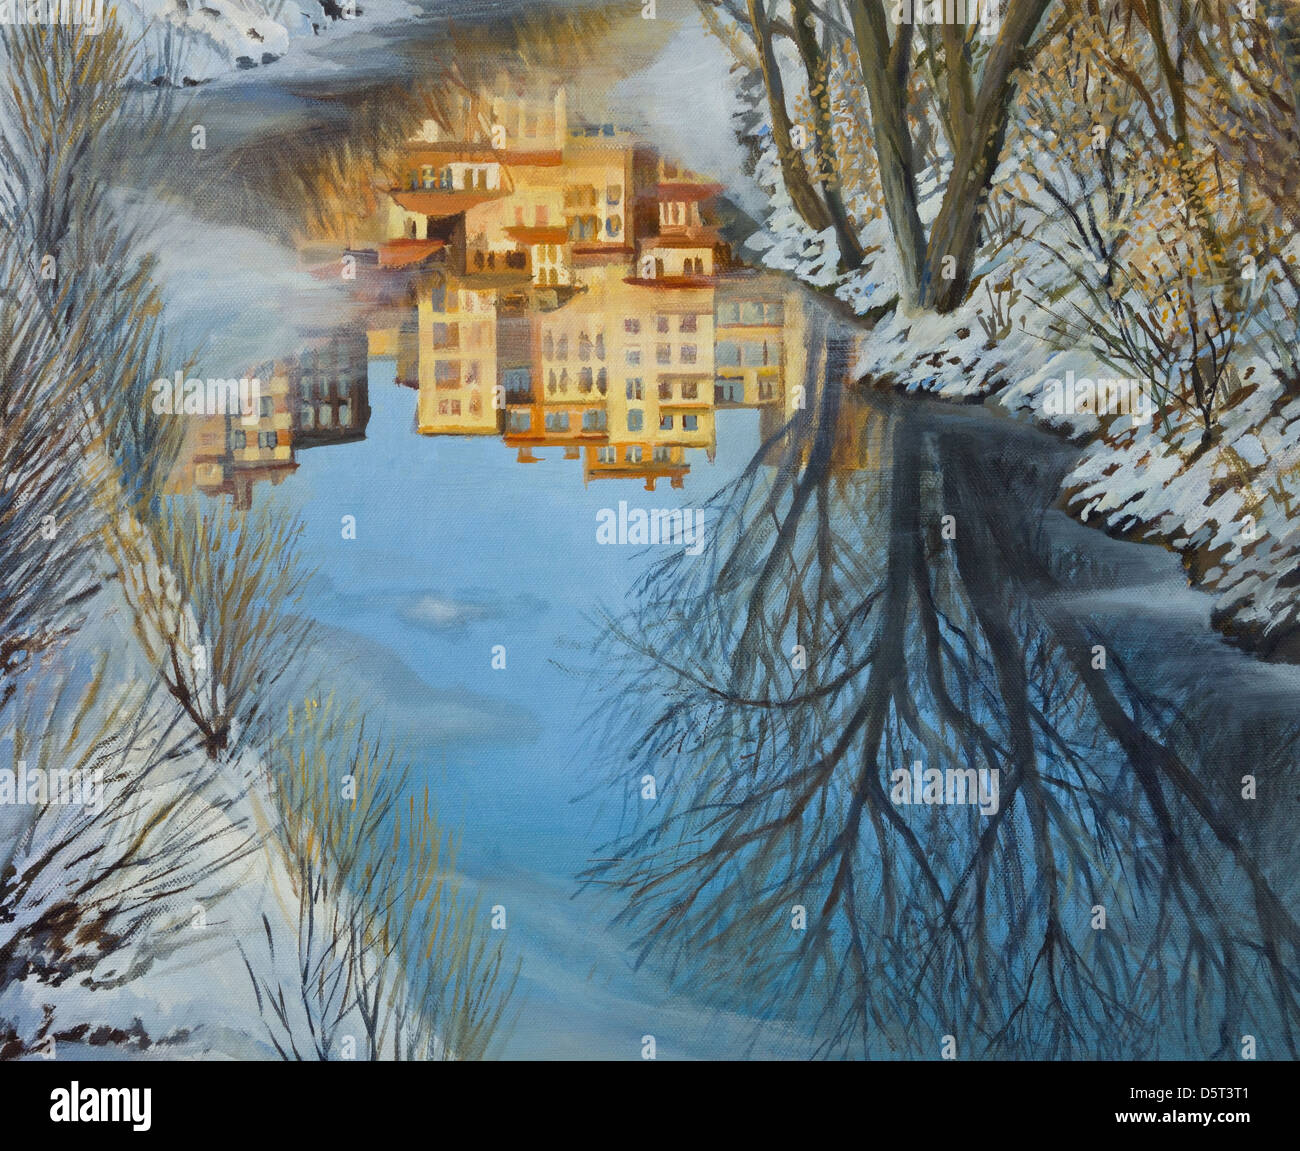 Une peinture à l'huile sur toile d'une scène d'hiver avec bâtiments colorés reflet dans un fleuve gelé en partie. Banque D'Images